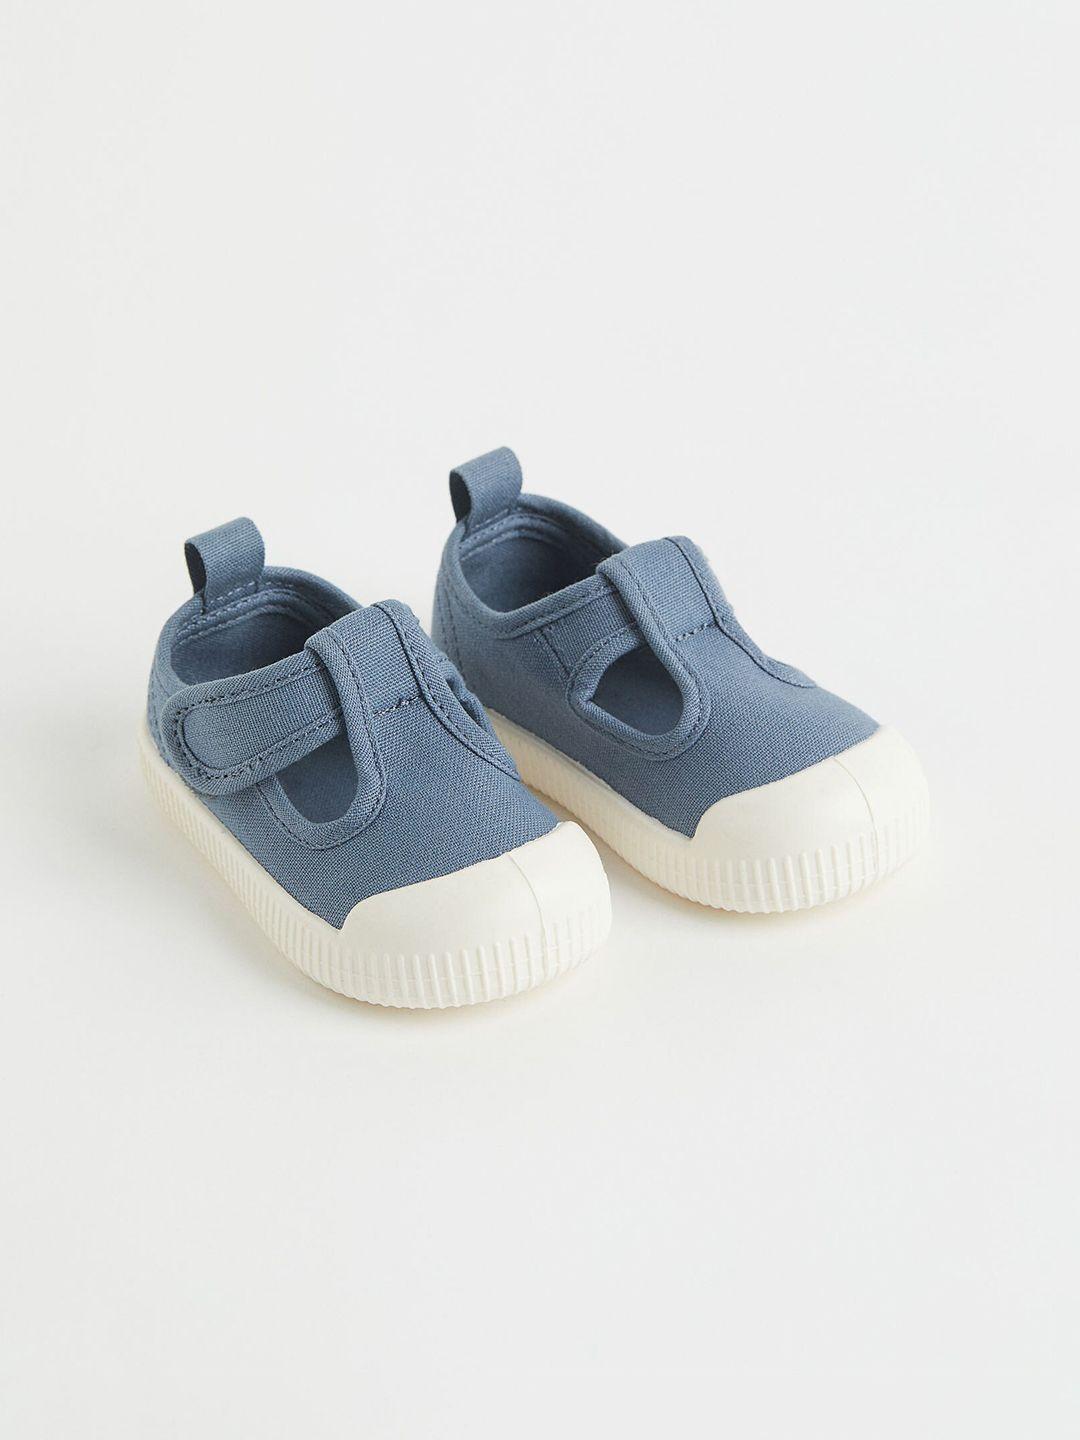 h&m girls blue cotton canvas sandals